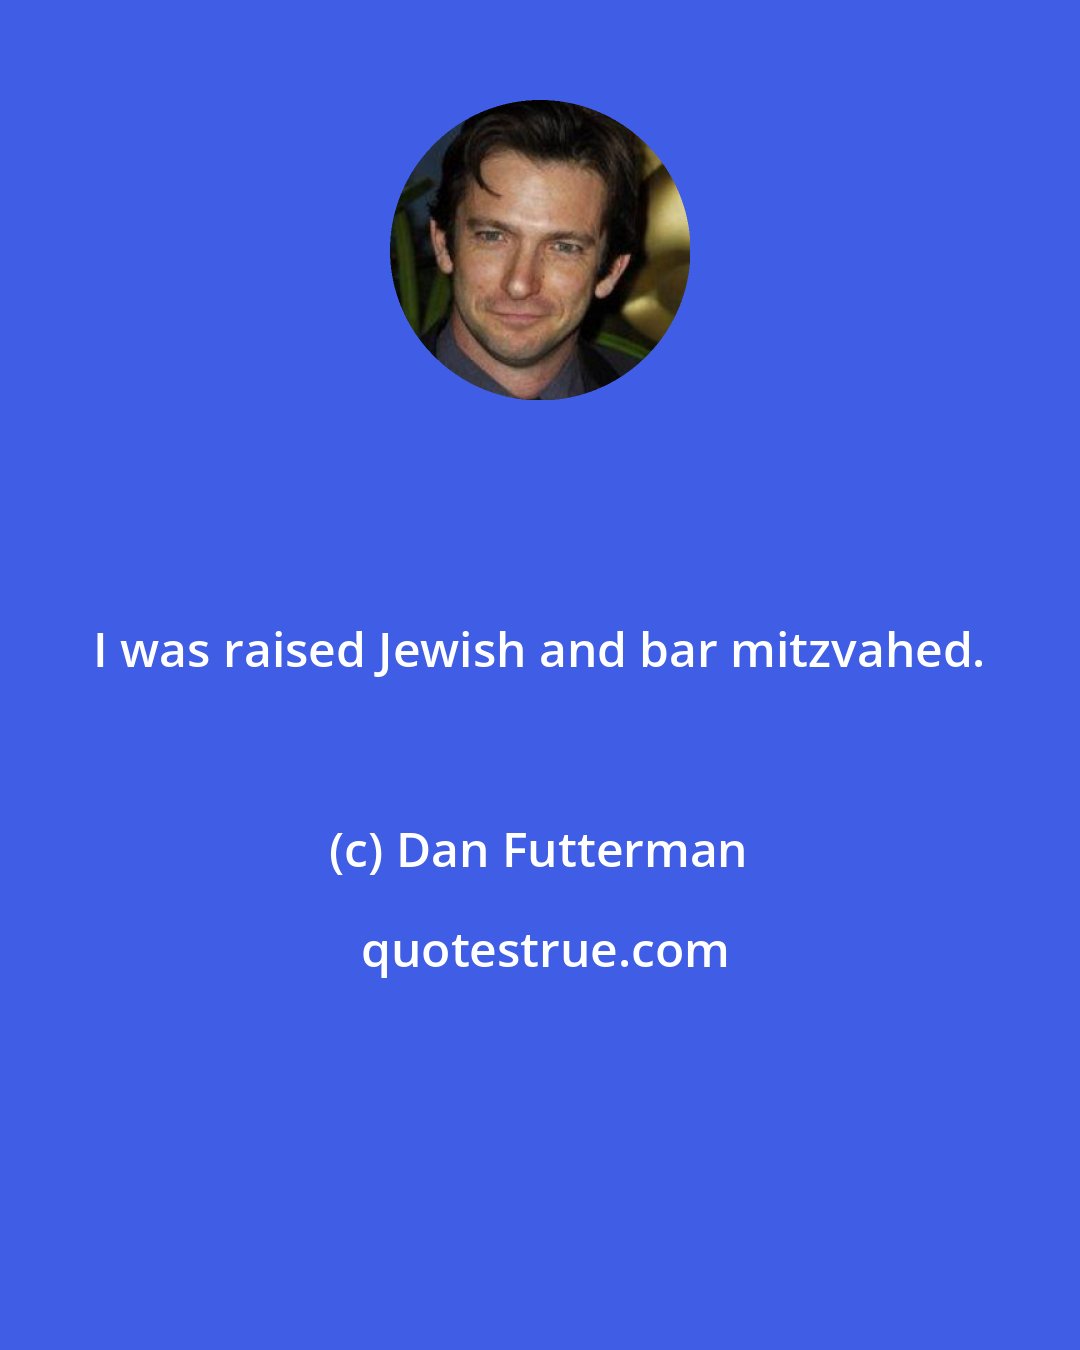 Dan Futterman: I was raised Jewish and bar mitzvahed.